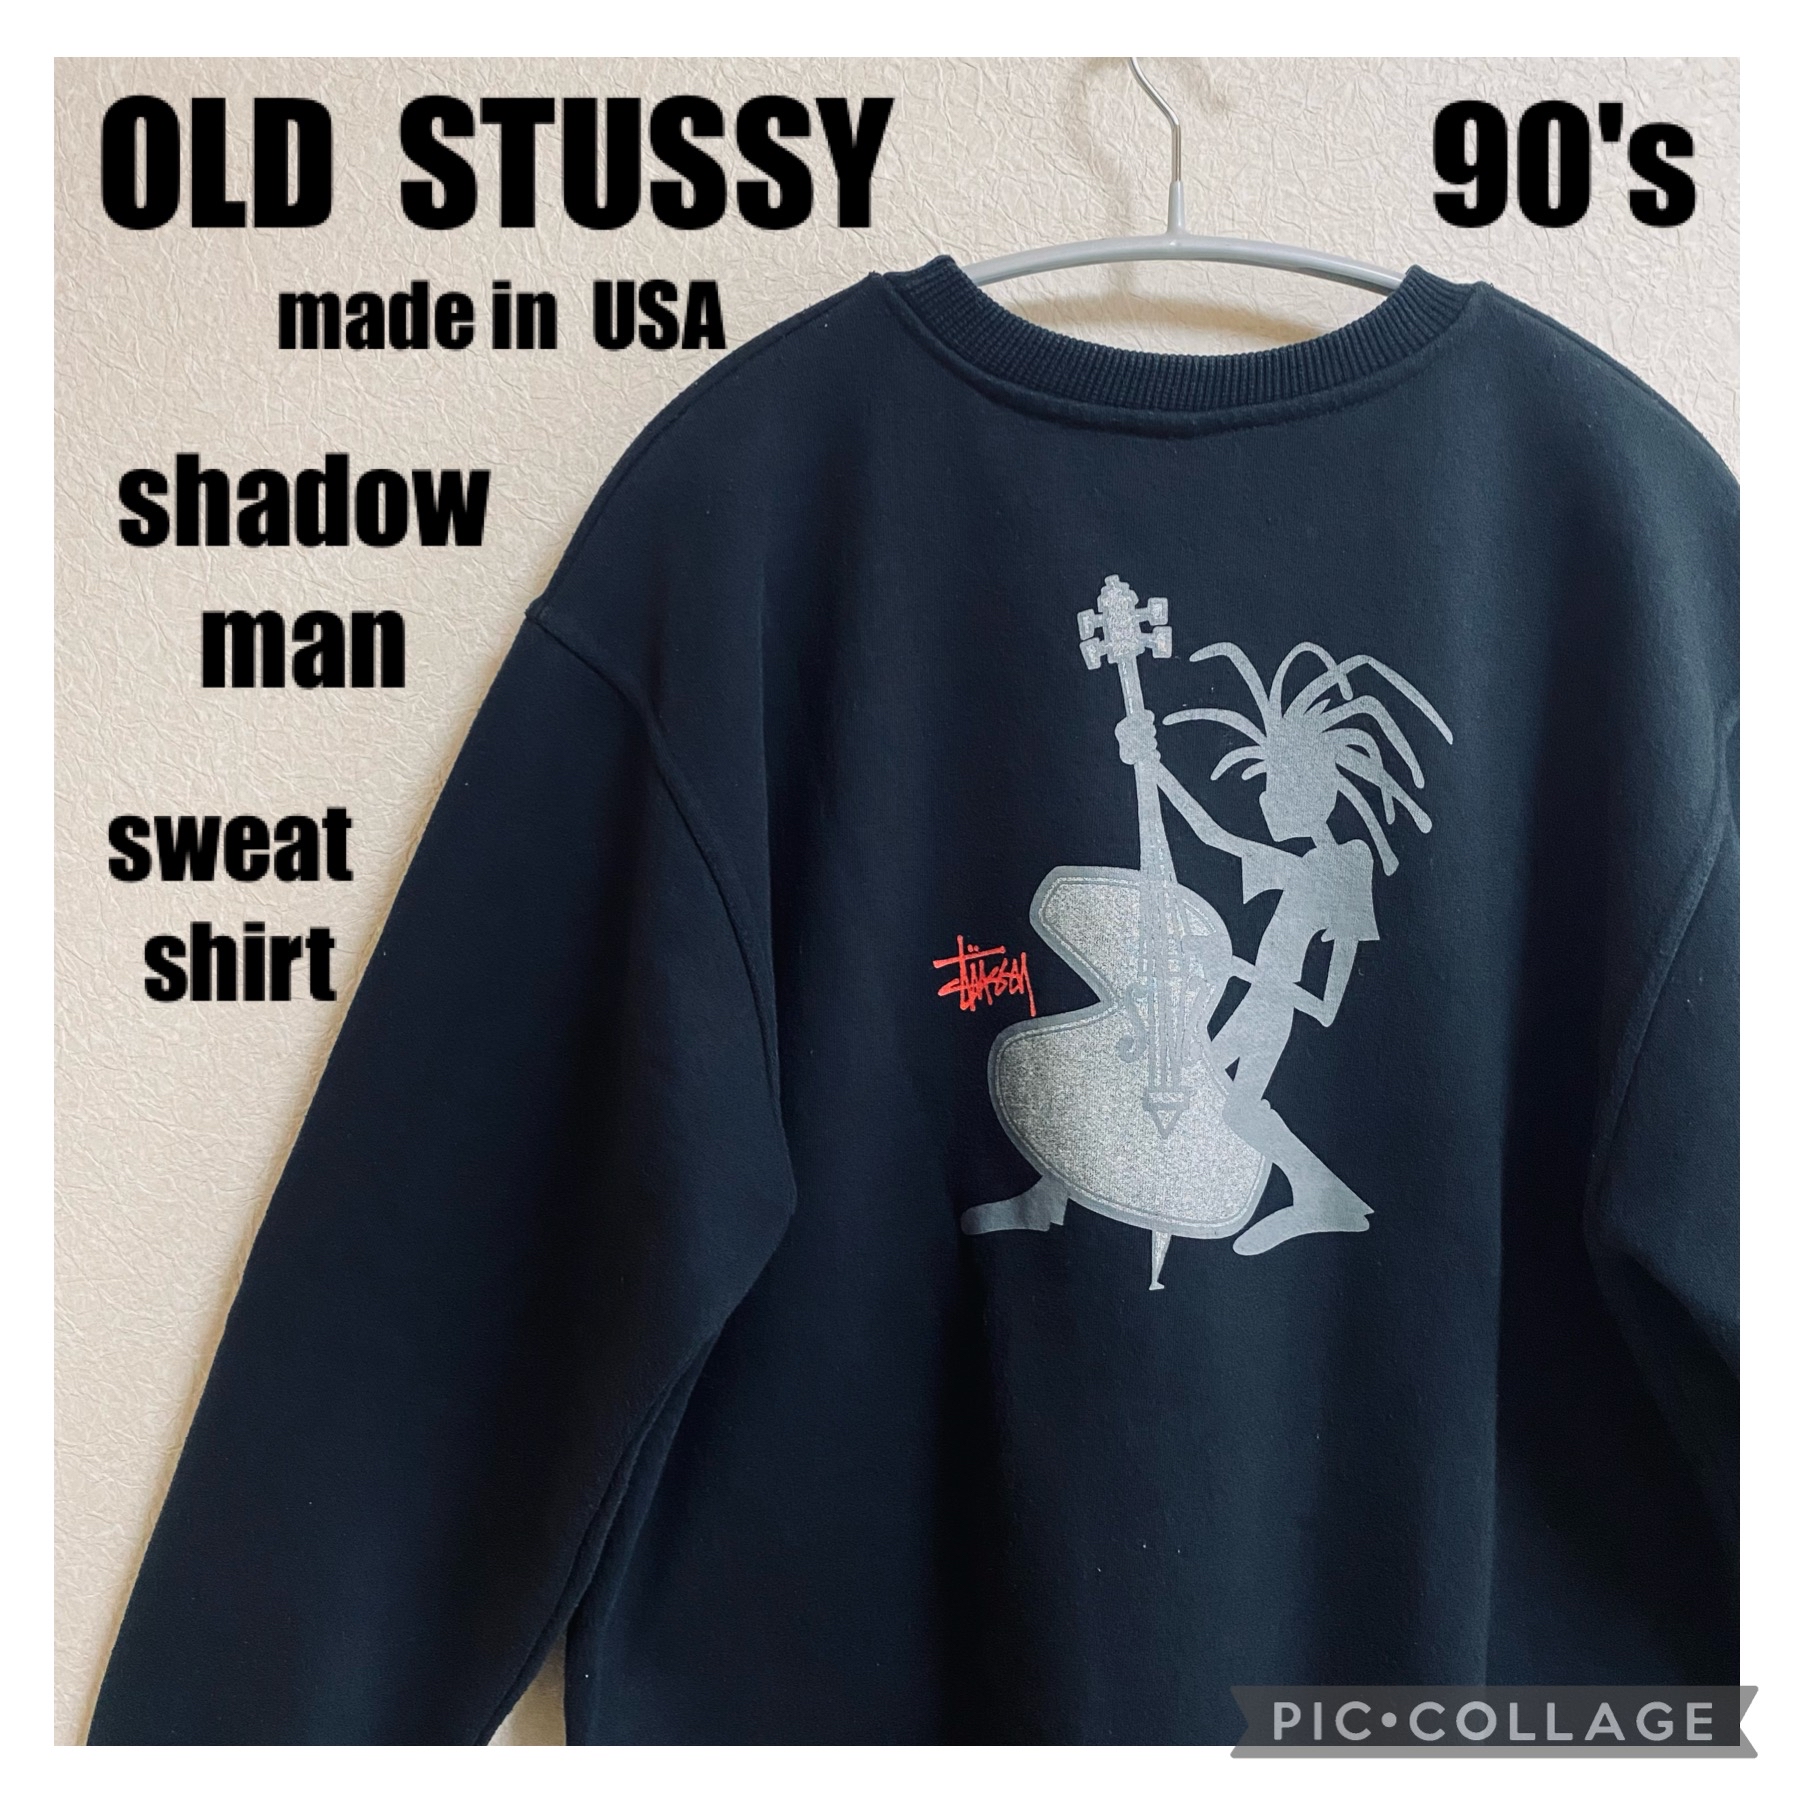 stussy スウェット シャドーマン 80s old 90s